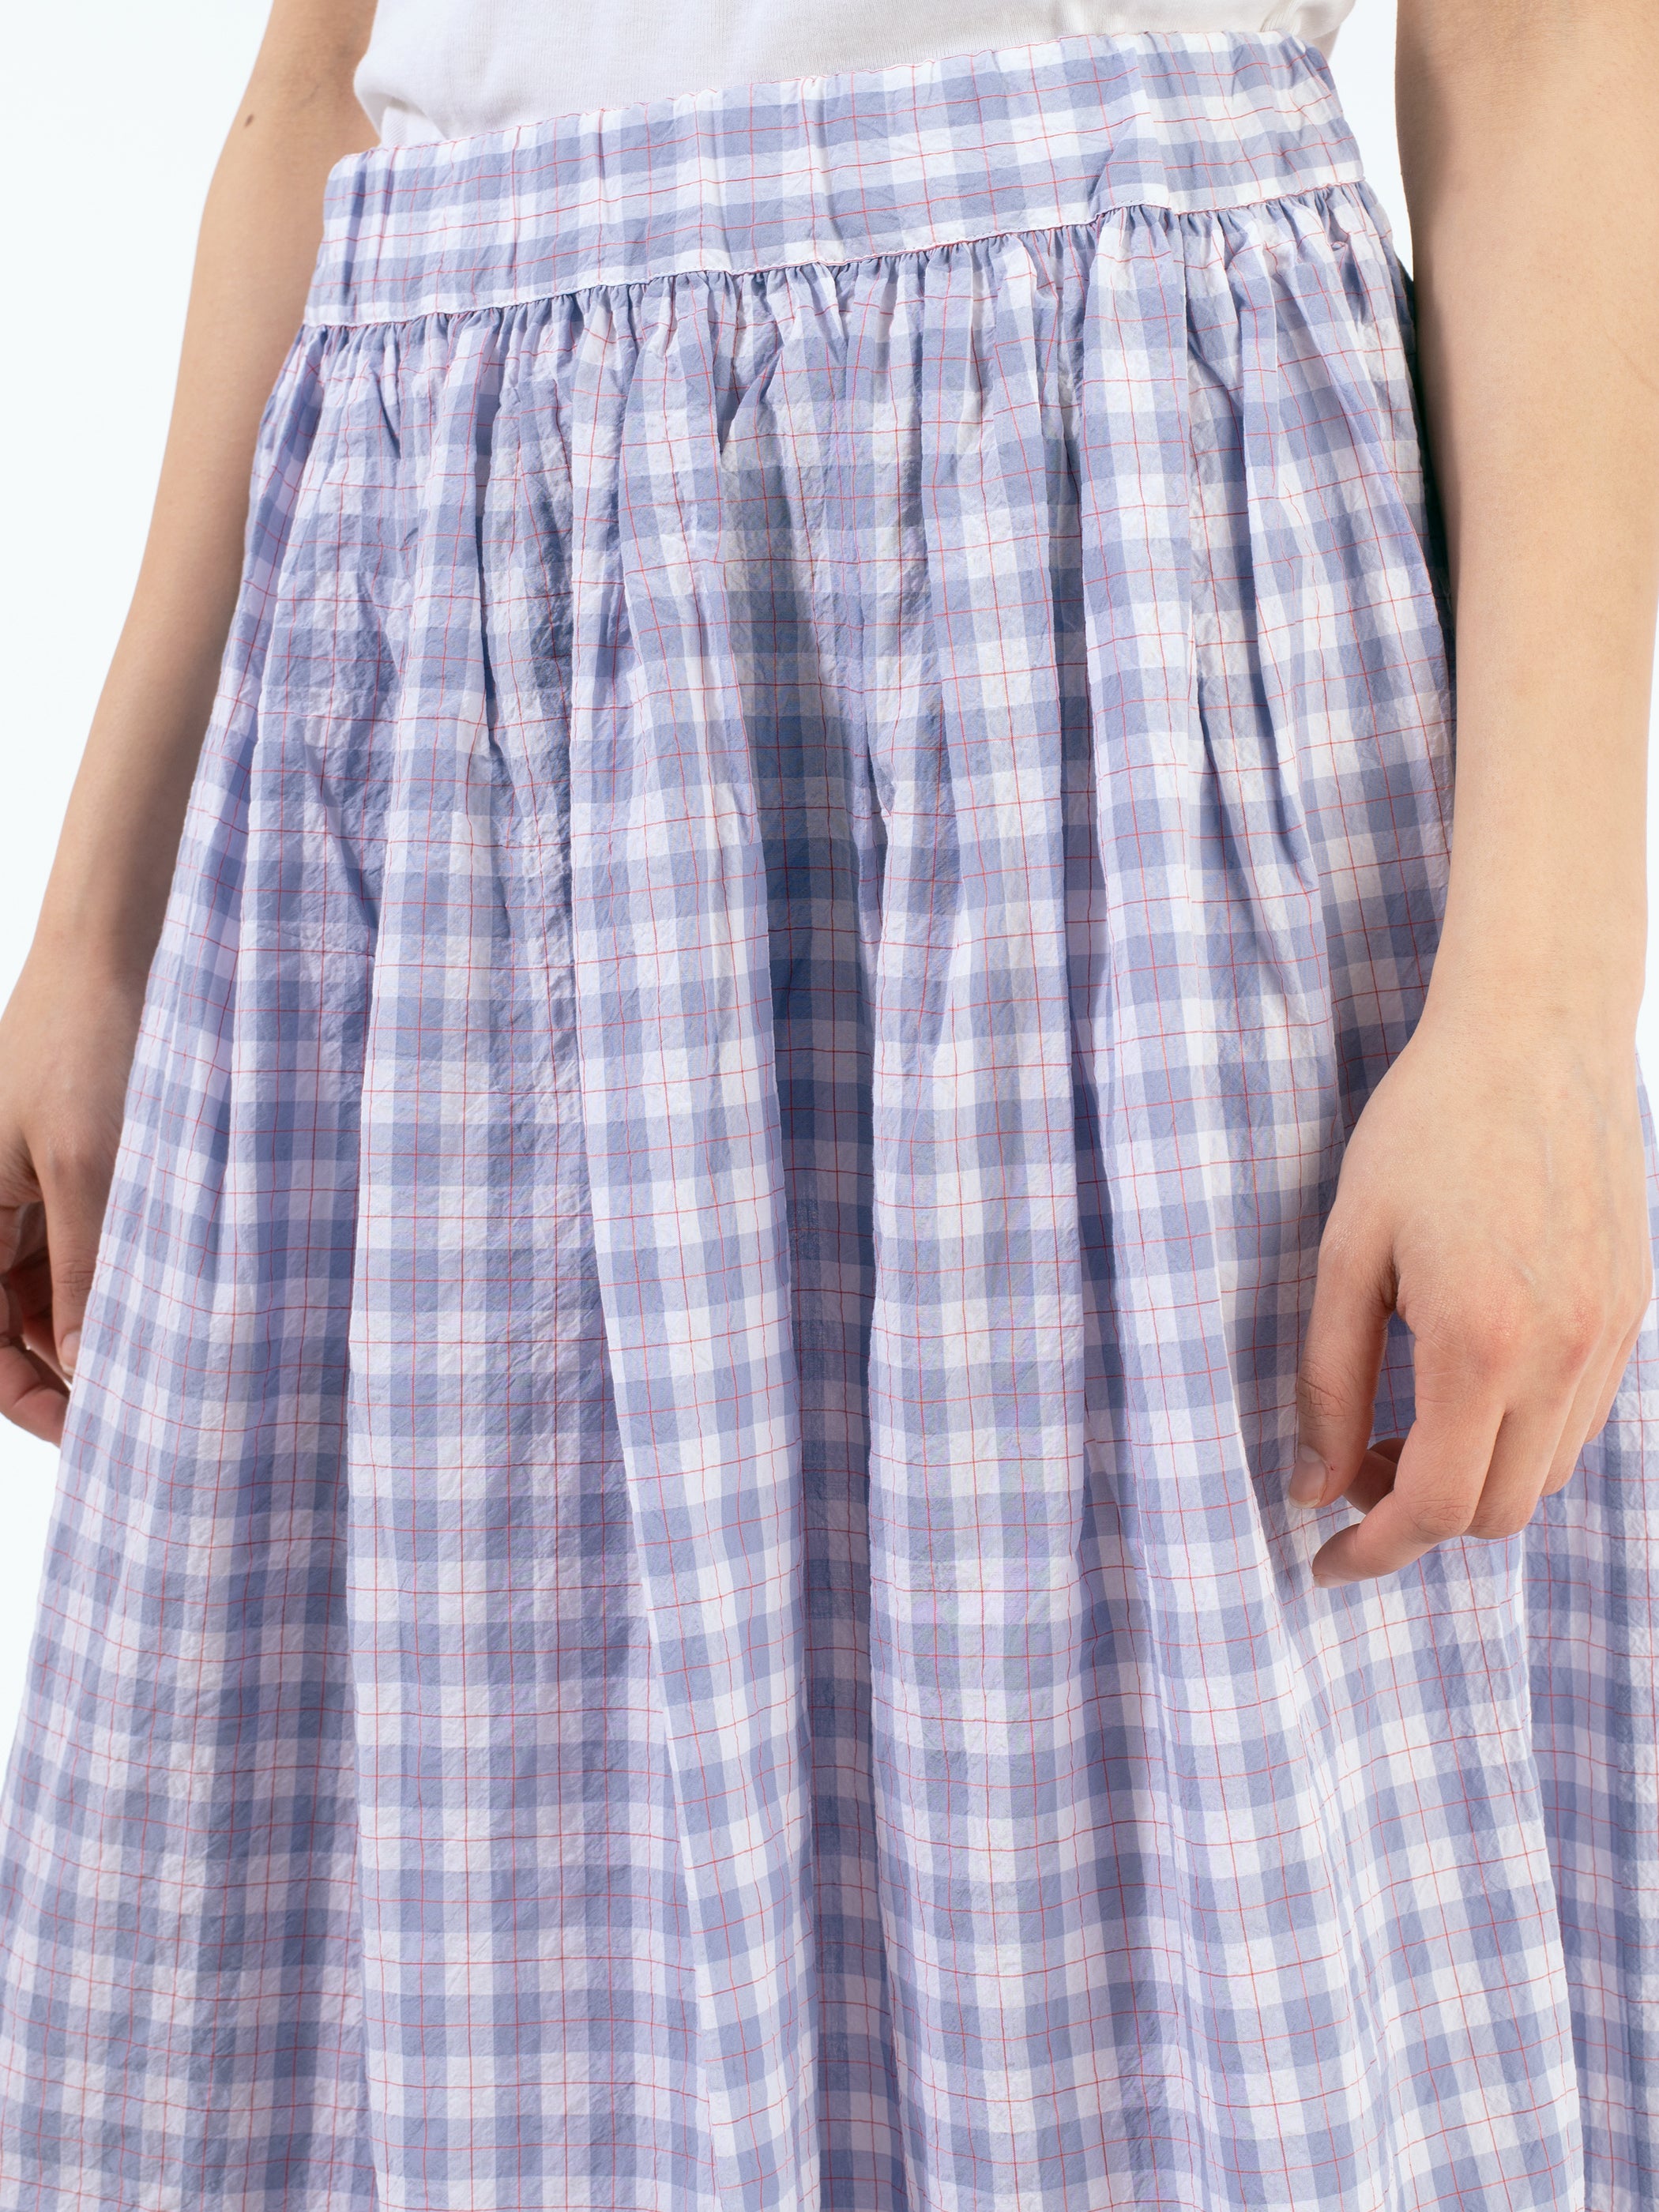 P1569 Skirt